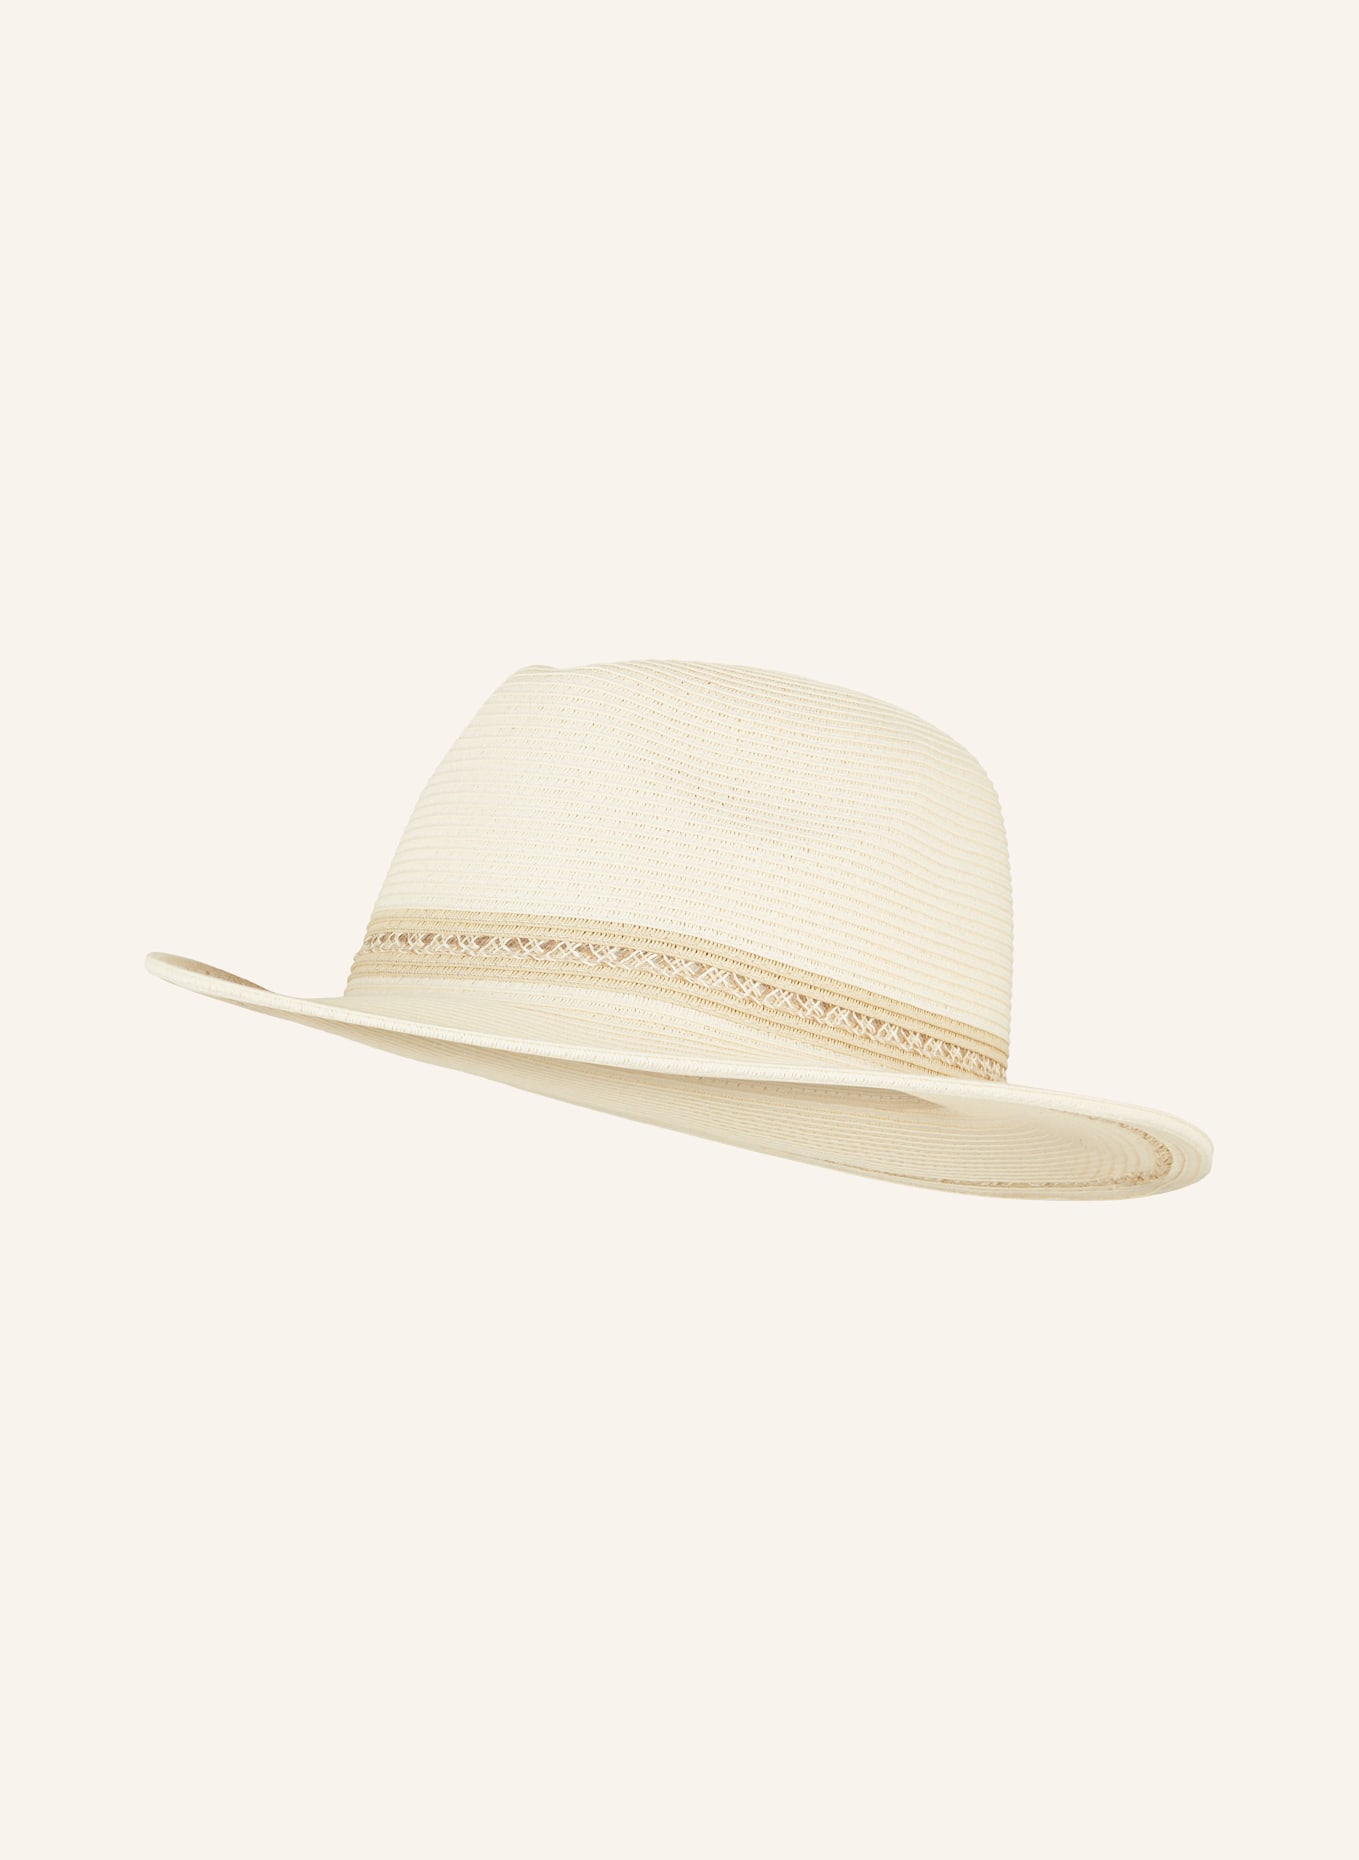 LOEVENICH Straw hat, Color: CREAM (Image 1)